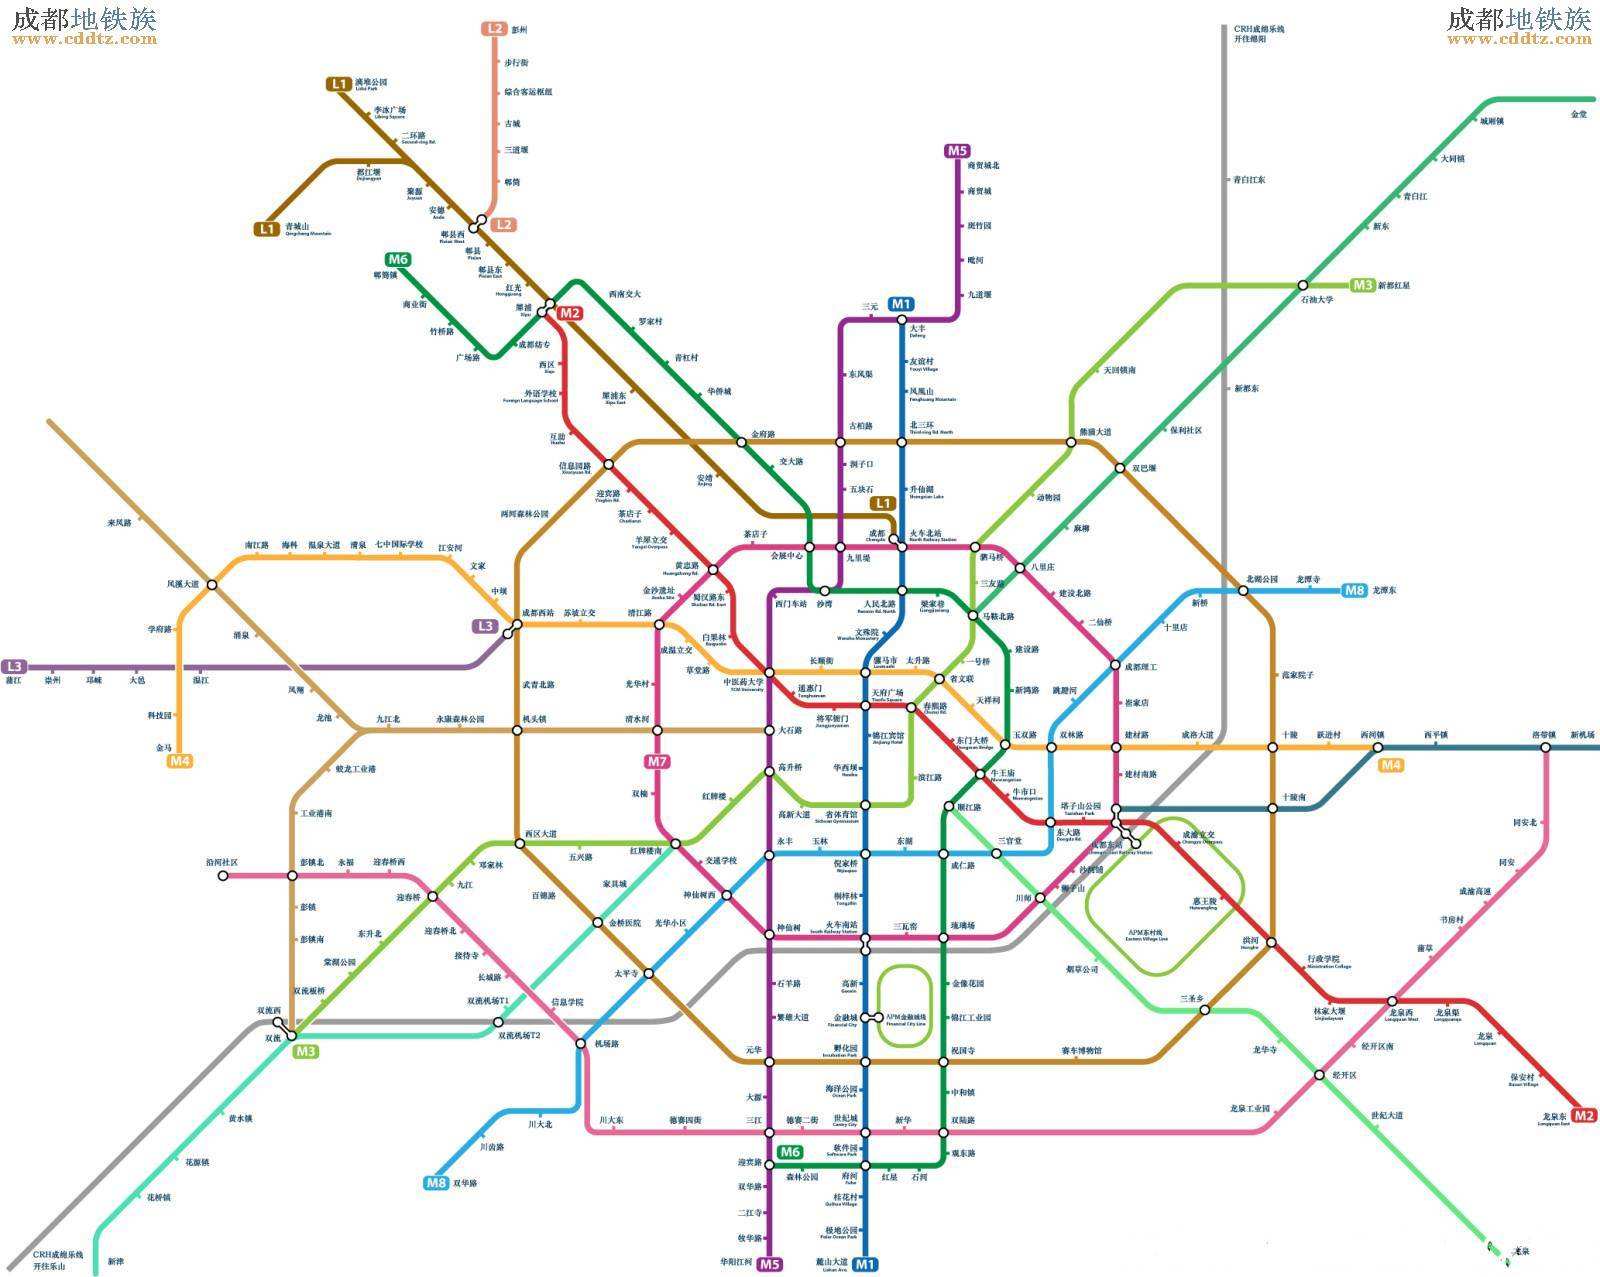 成都地铁规划图高清版曝光!2020年开通13条地